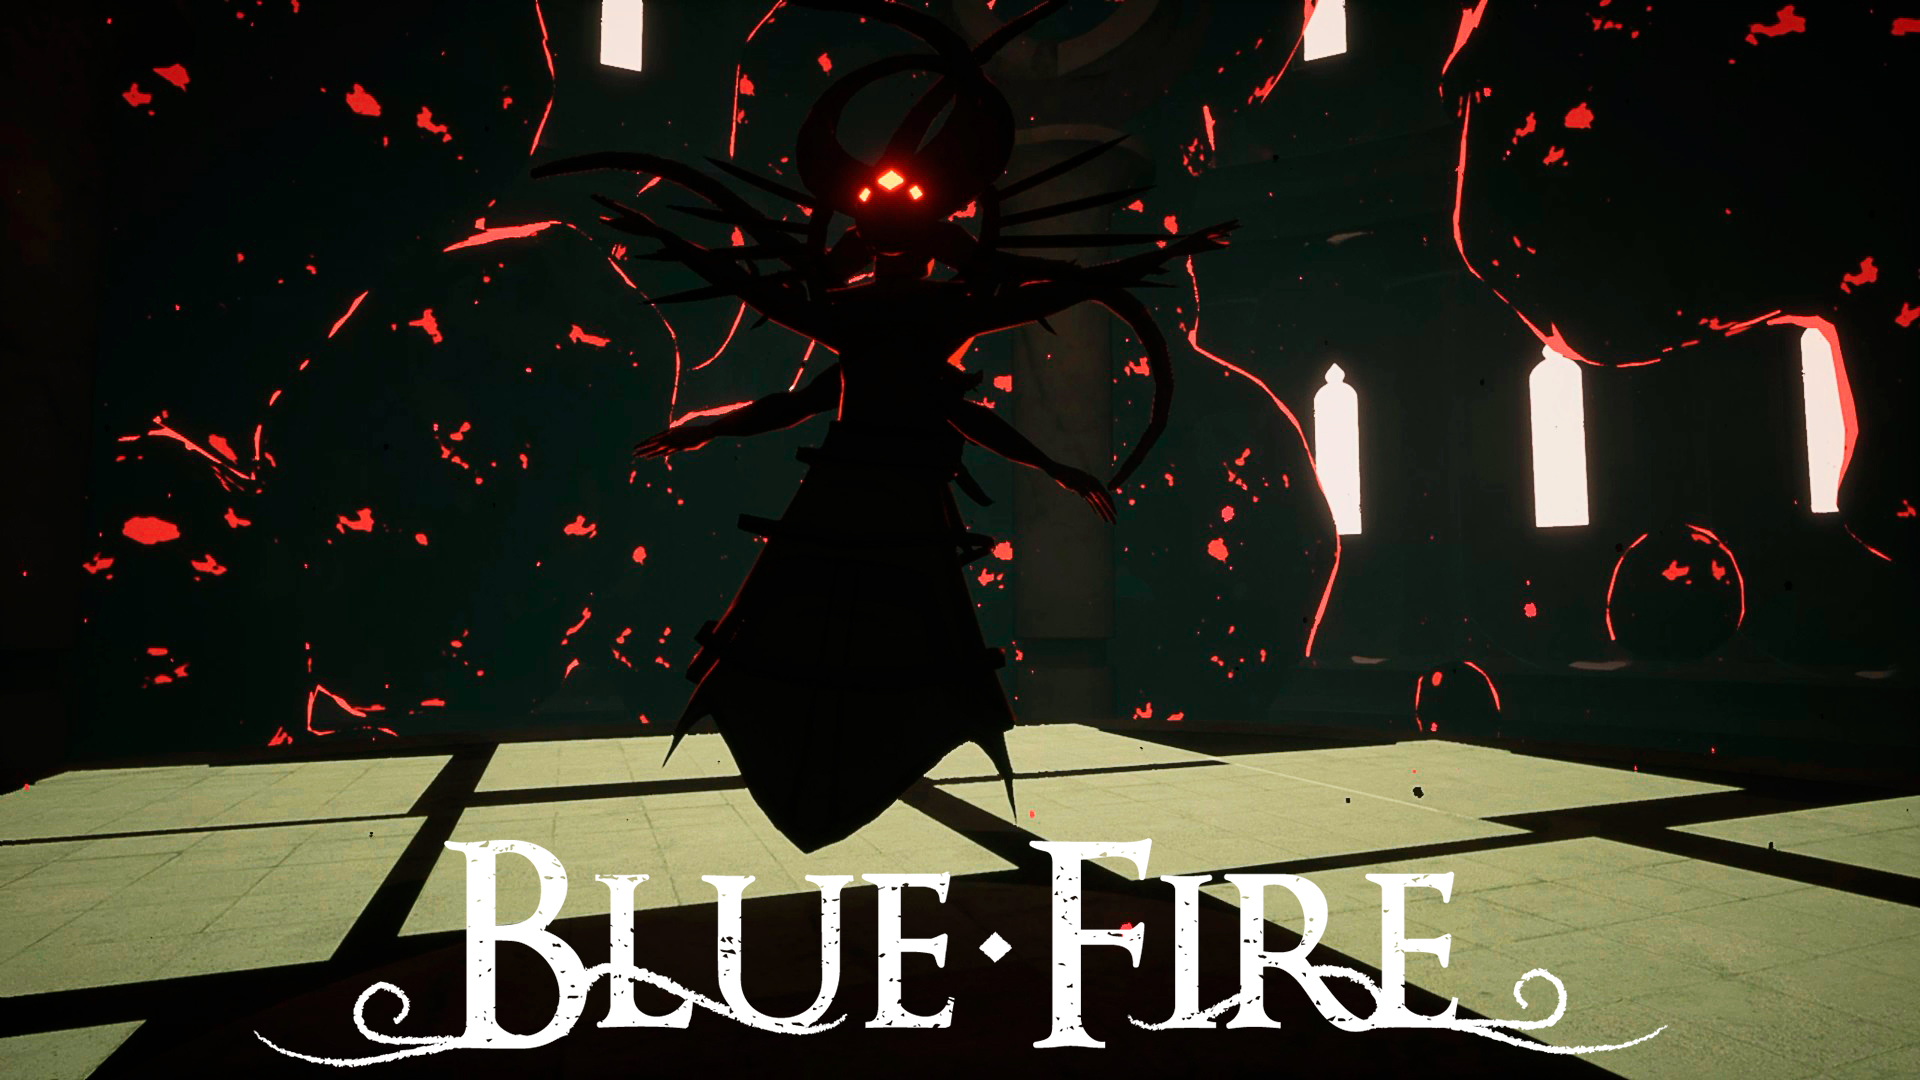 Финальный босс игры Blue fire + Прохождение испытания: "Прорыв Горборда" 24 серия